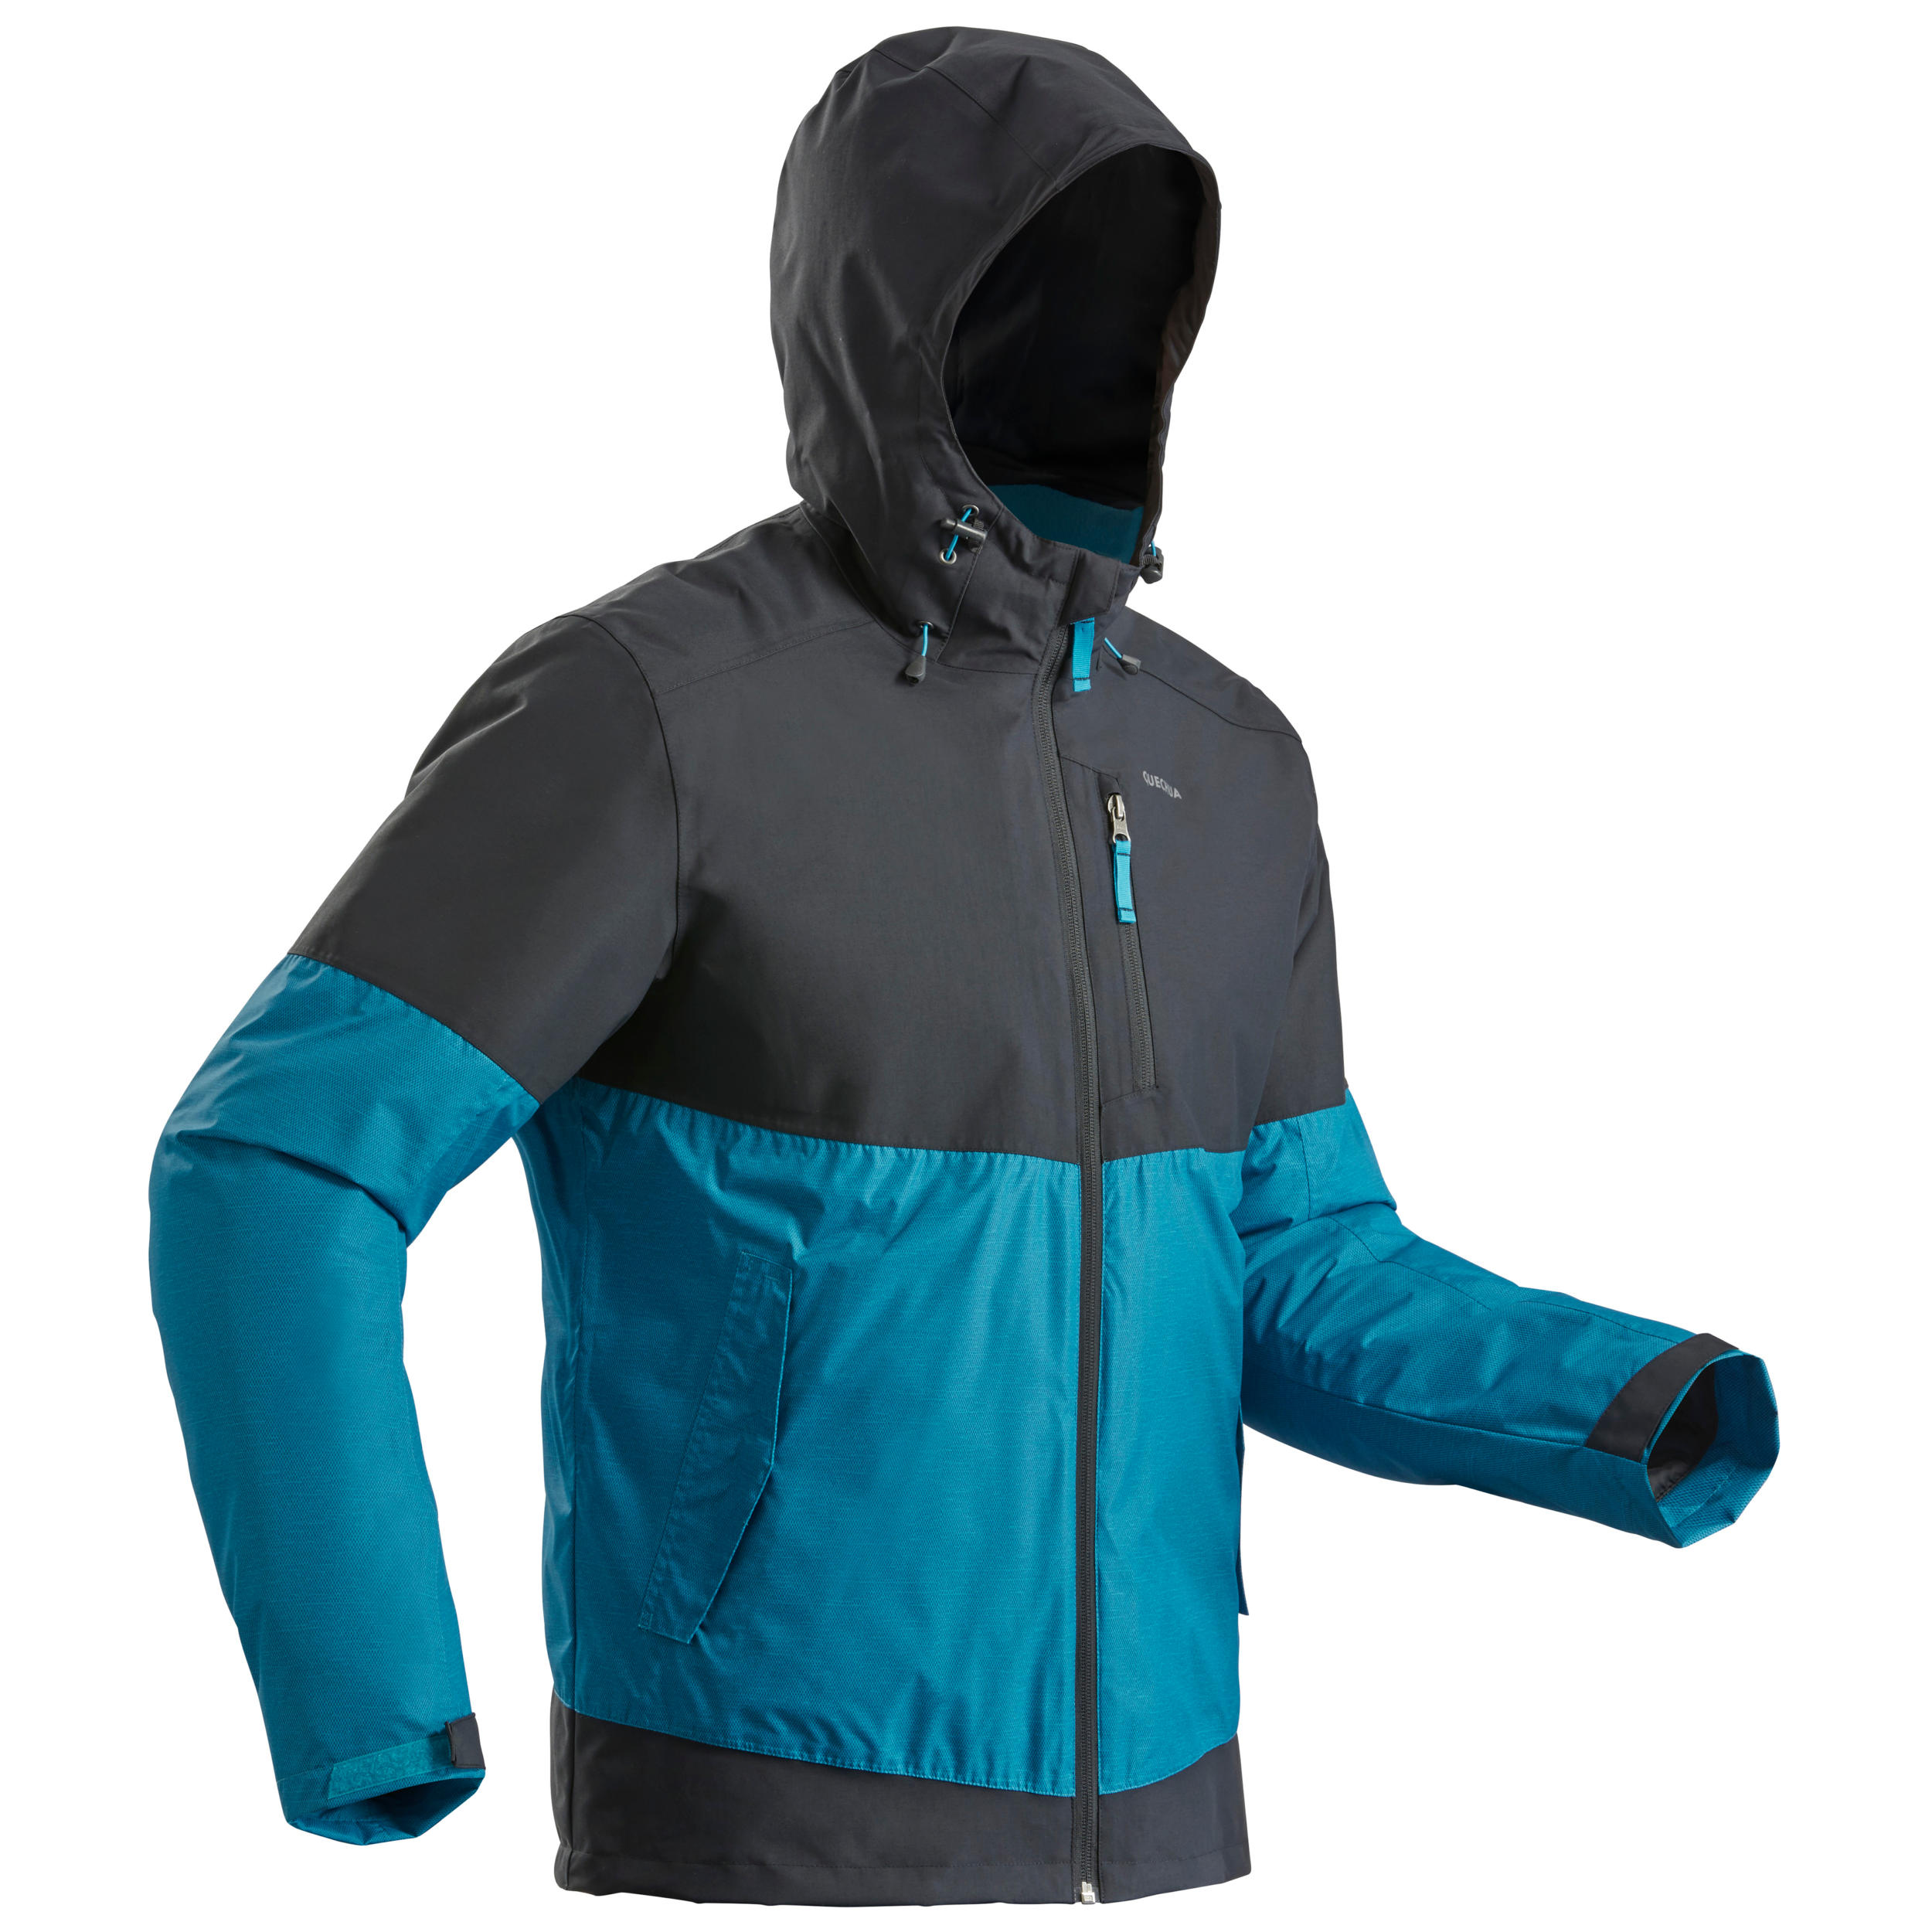 QUECHUA Men’s Waterproof Winter Hiking Jacket - SH100 X-WARM -10°C